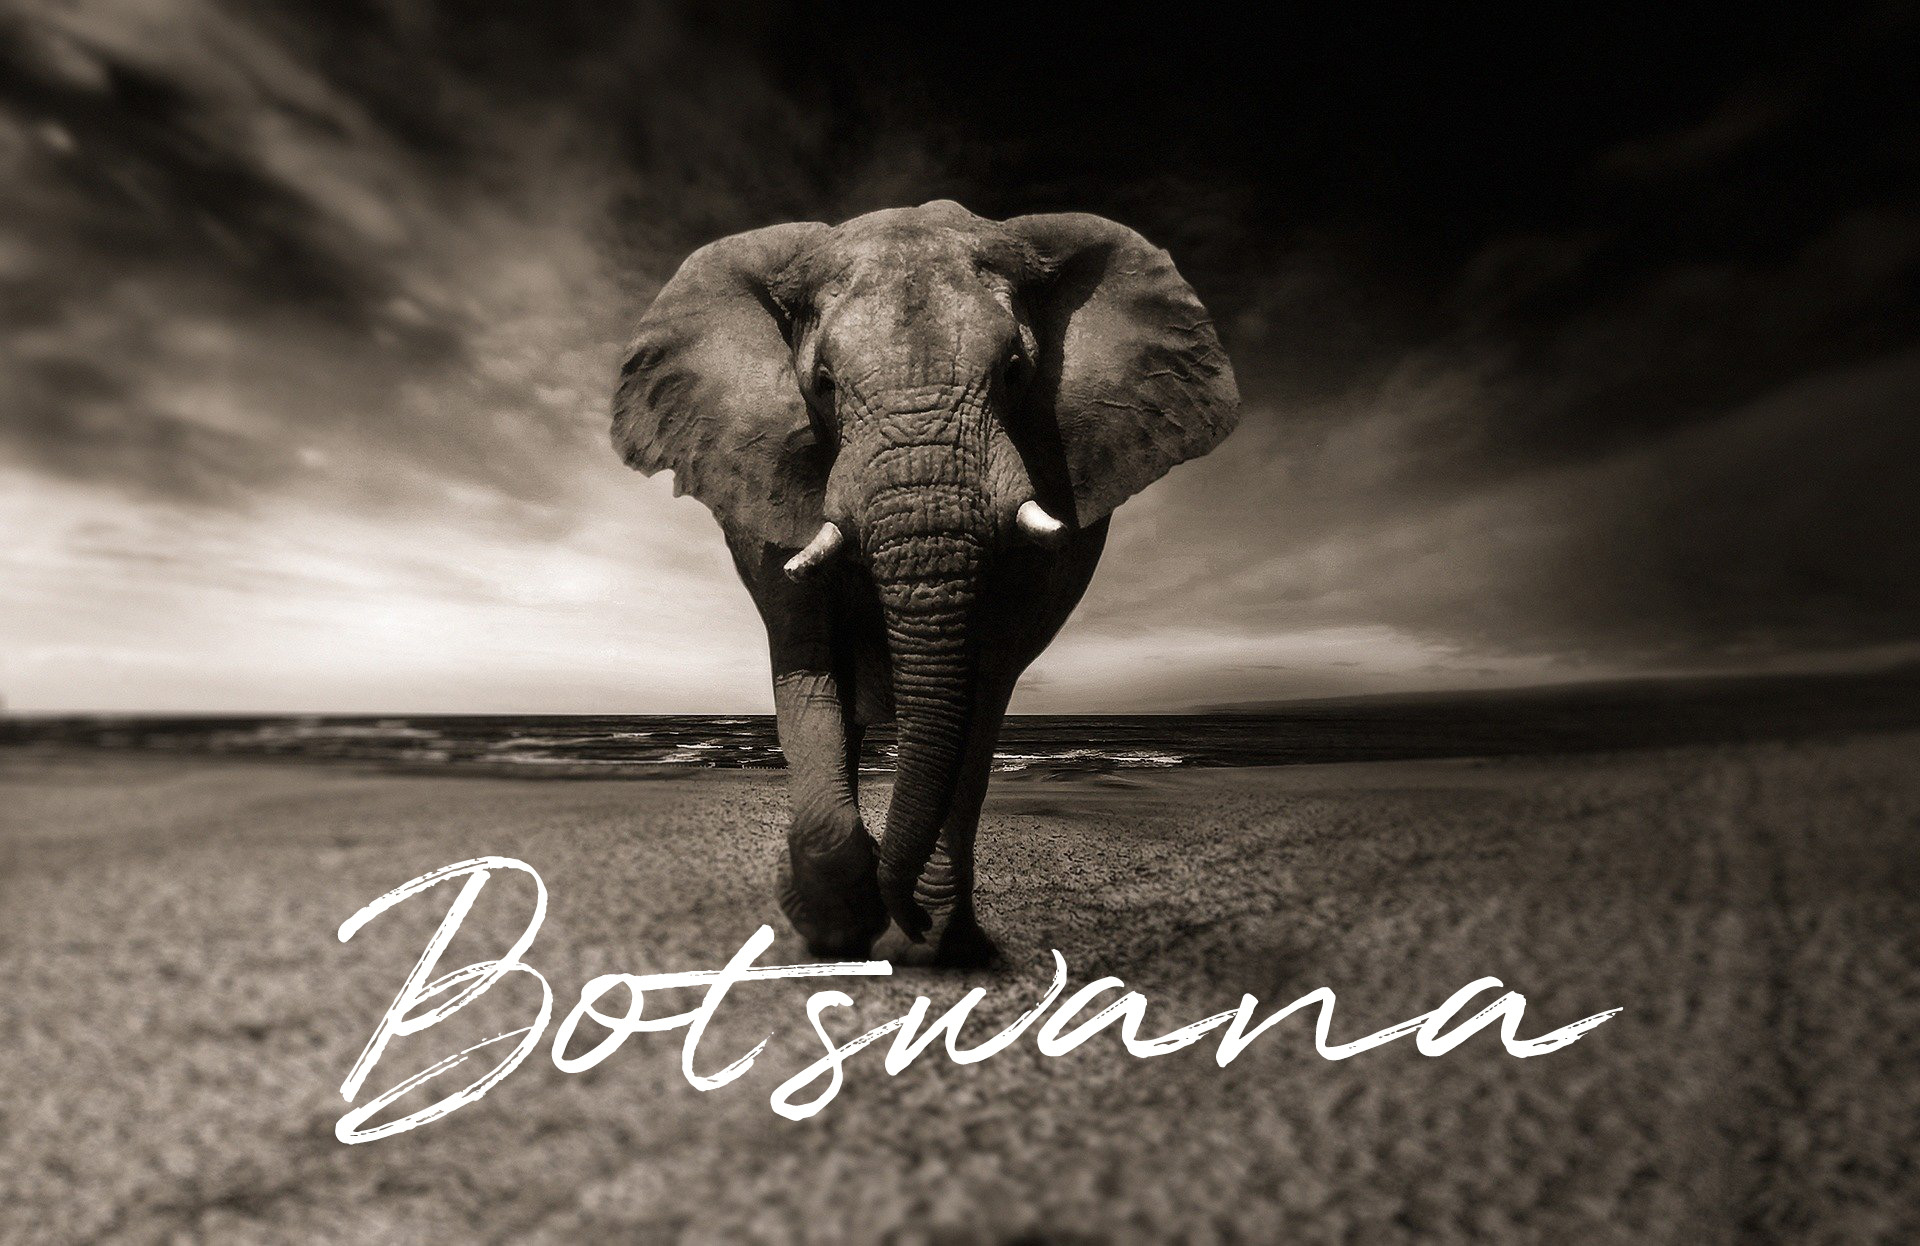 Viajes a Botswana en Lujo Exclusivo y A medida - The Indiana Travel Experiences